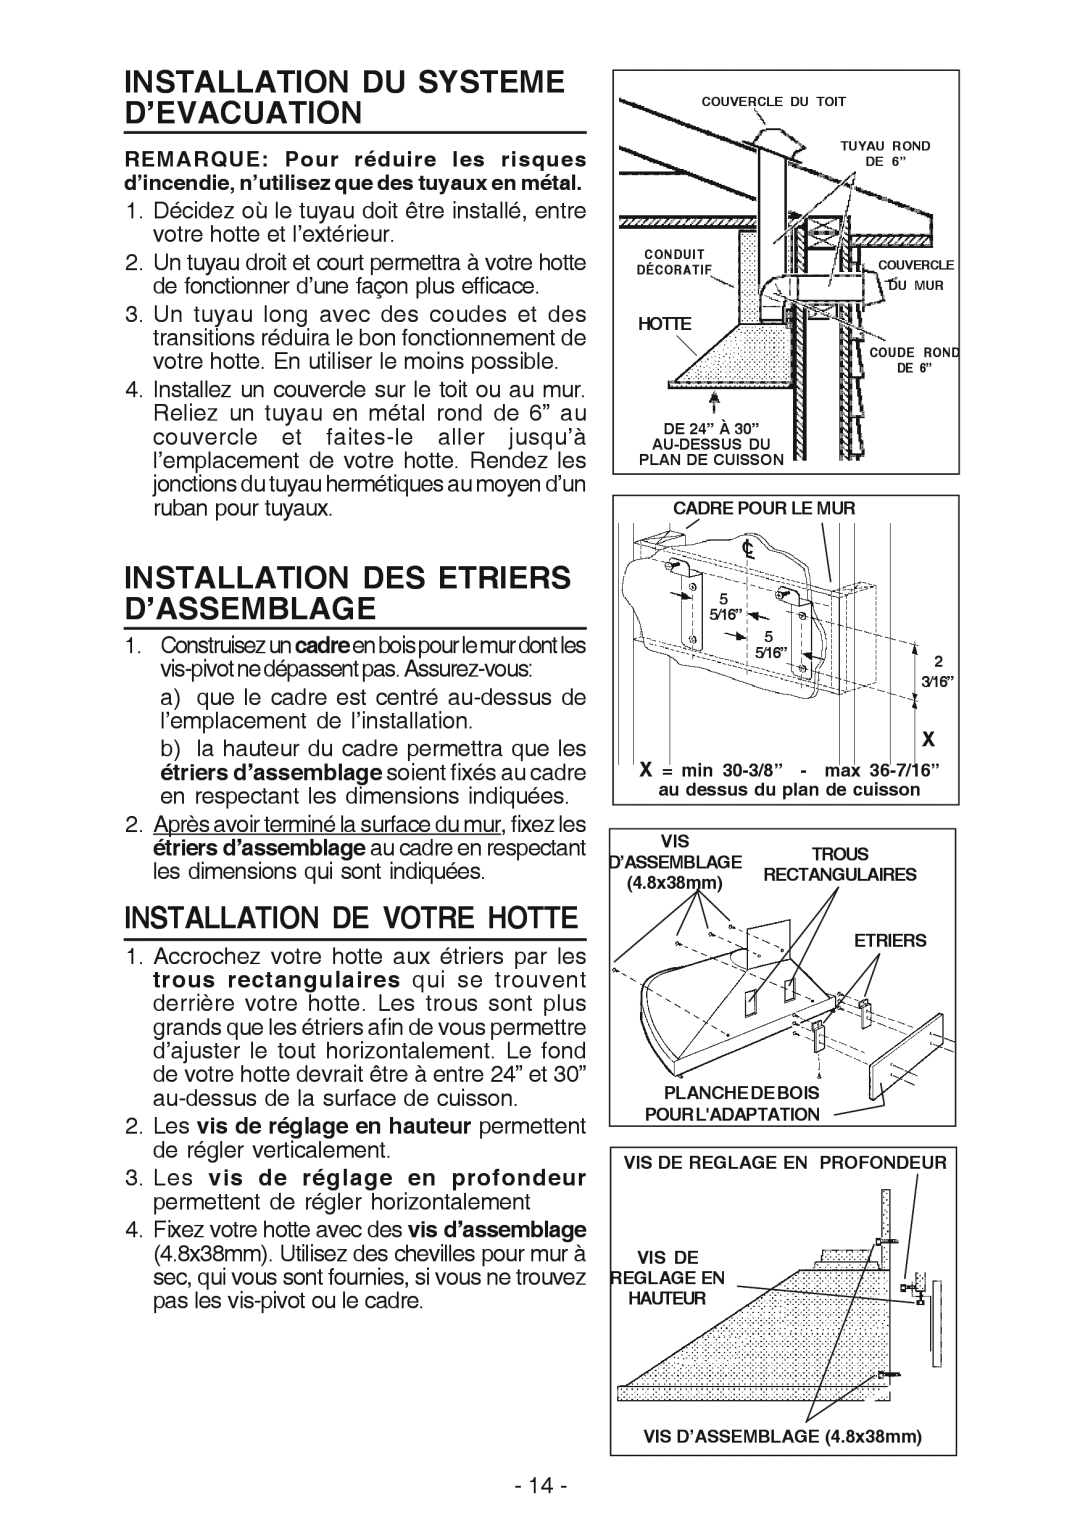 Best K15 manual Installation Du Systeme D’Evacuation, Installation Des Etriers D’Assemblage, Installation De Votre Hotte 